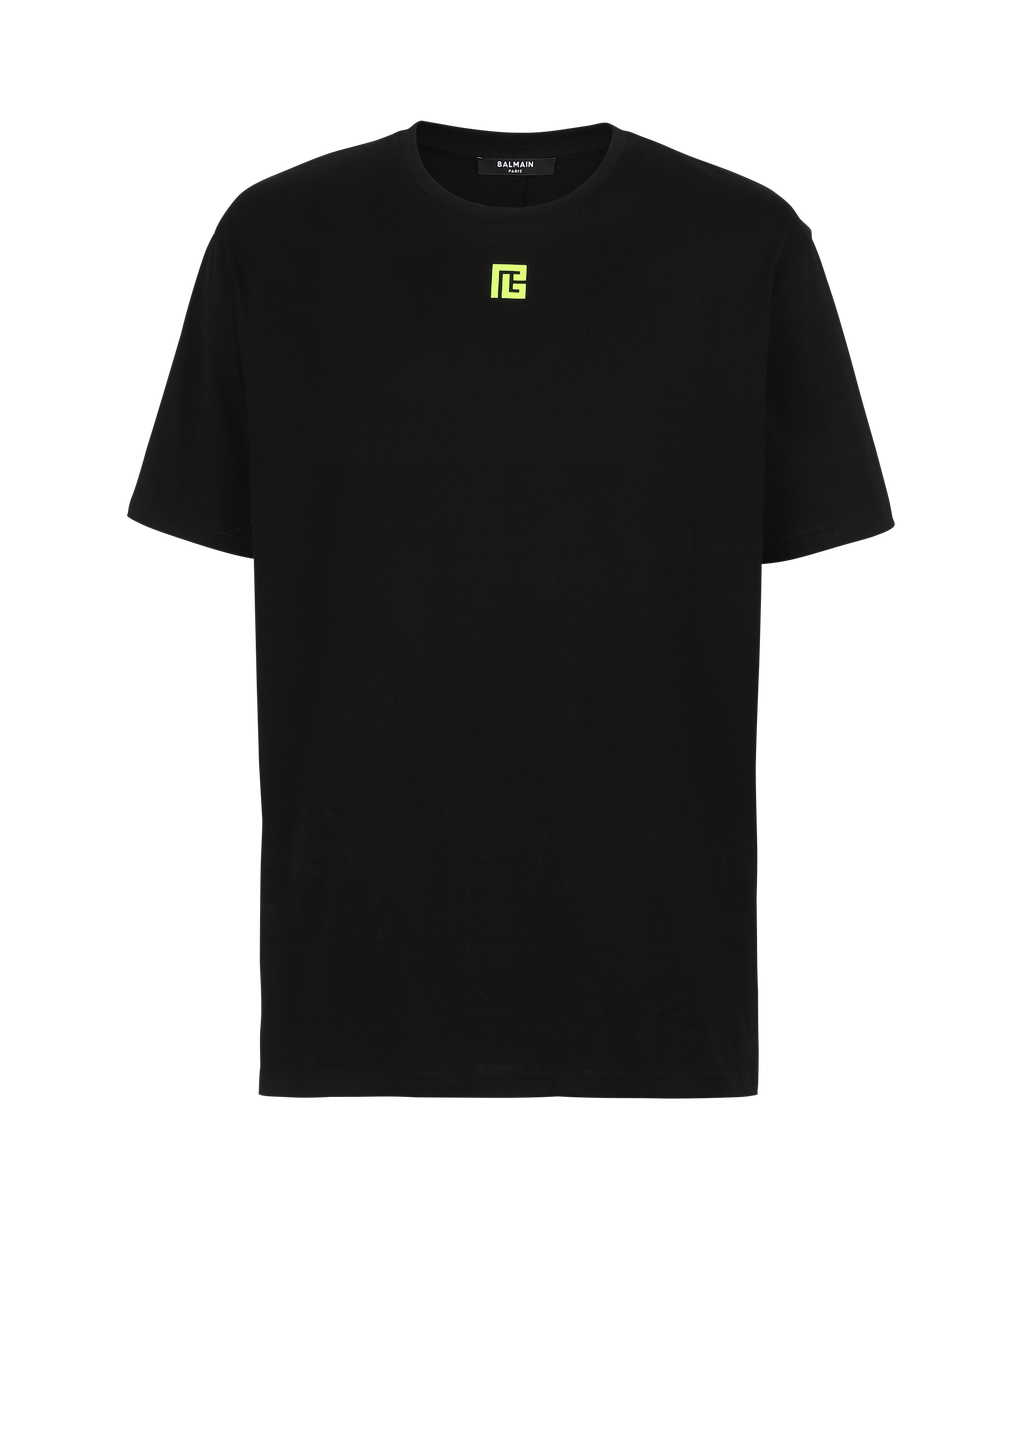 T-Shirt aus Baumwolle mit Maxi-Balmain-Logo-Print auf der Rückseite, schwarz, hi-res